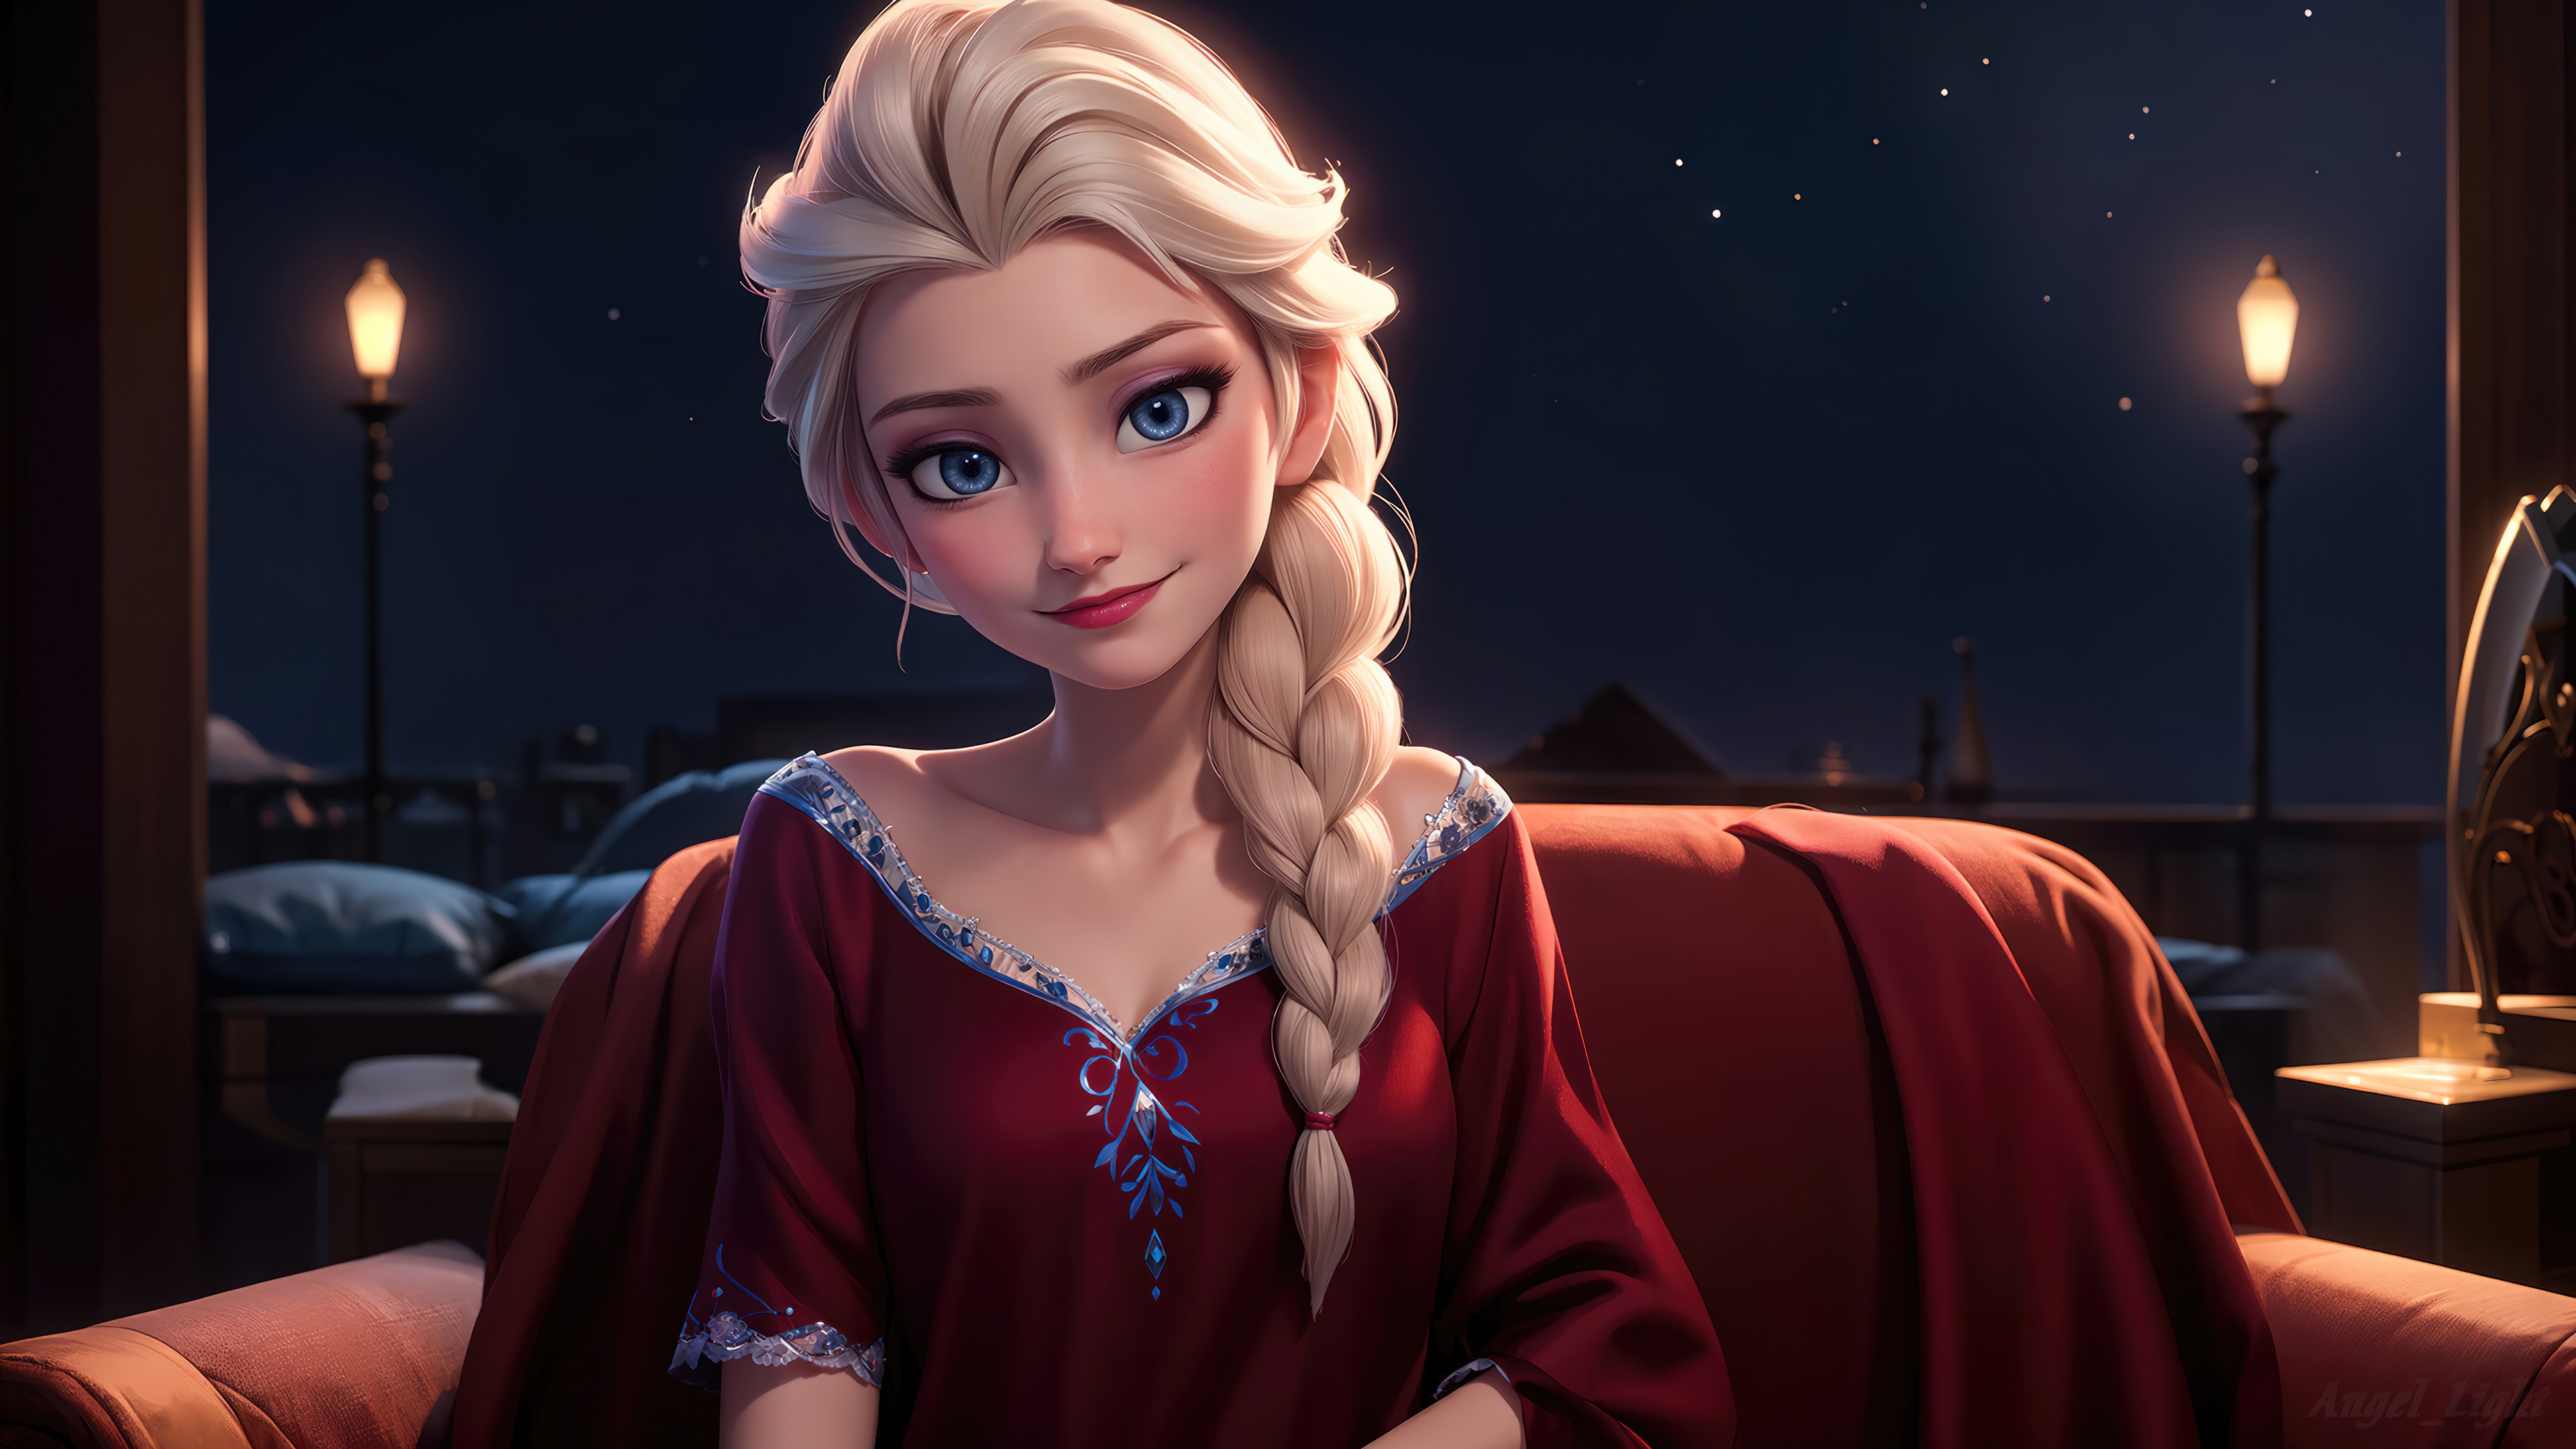 Fondos de pantalla Elsa de Frozen